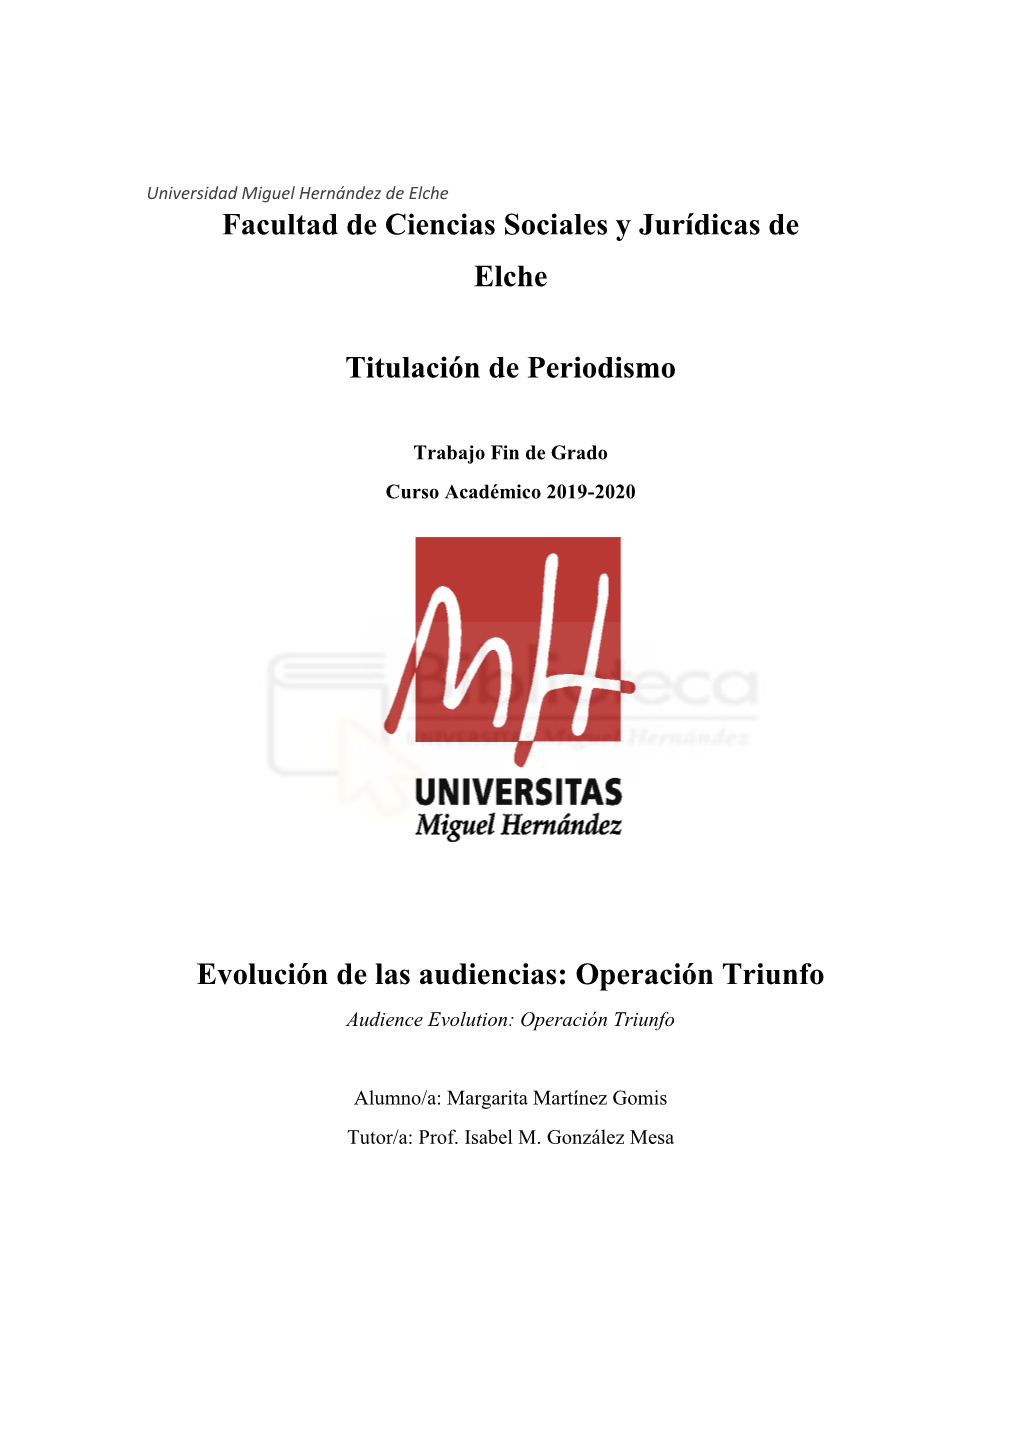 Facultad De Ciencias Sociales Y Jurídicas De Elche Titulación De Periodismo Evolución De Las Audiencias: Operación Triunfo